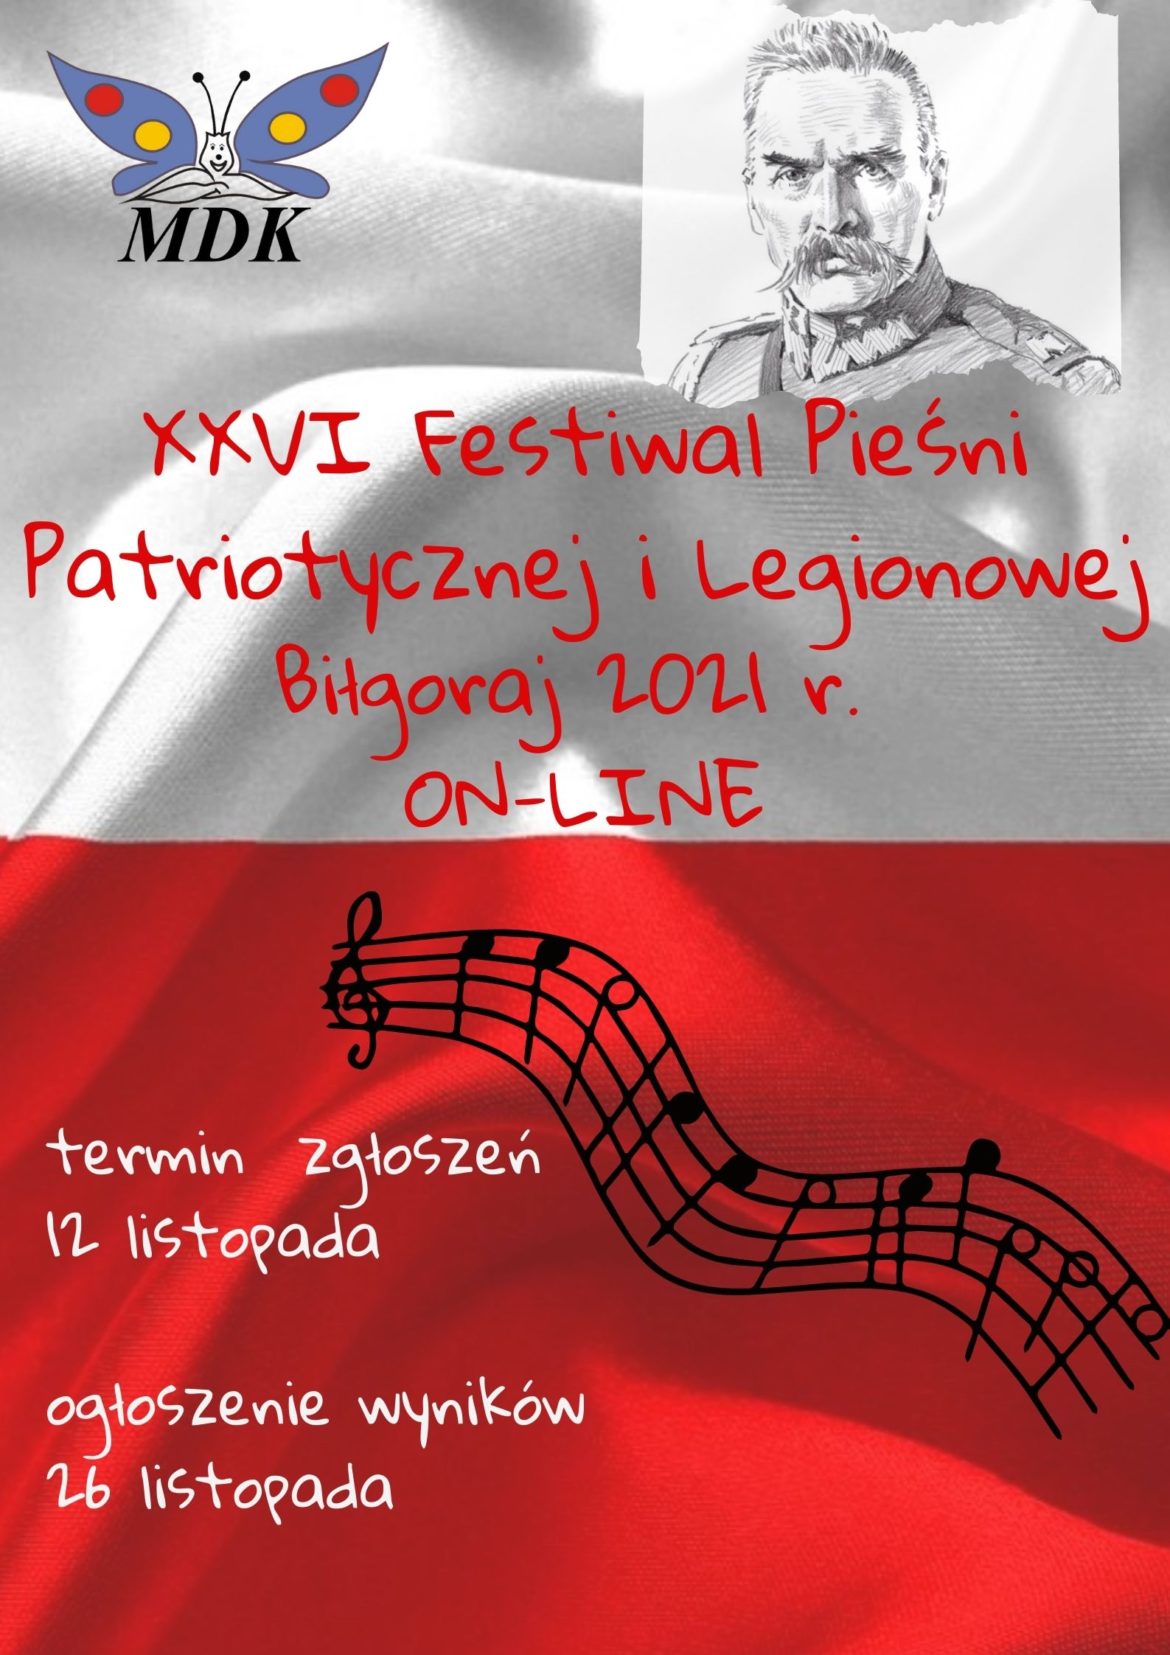 Festiwal Pieśni Patriotycznej i Legionowej Biłgoraj 2021 – ON-LINE – Zgłoszenia przyjmujemy do 12 listopada br.